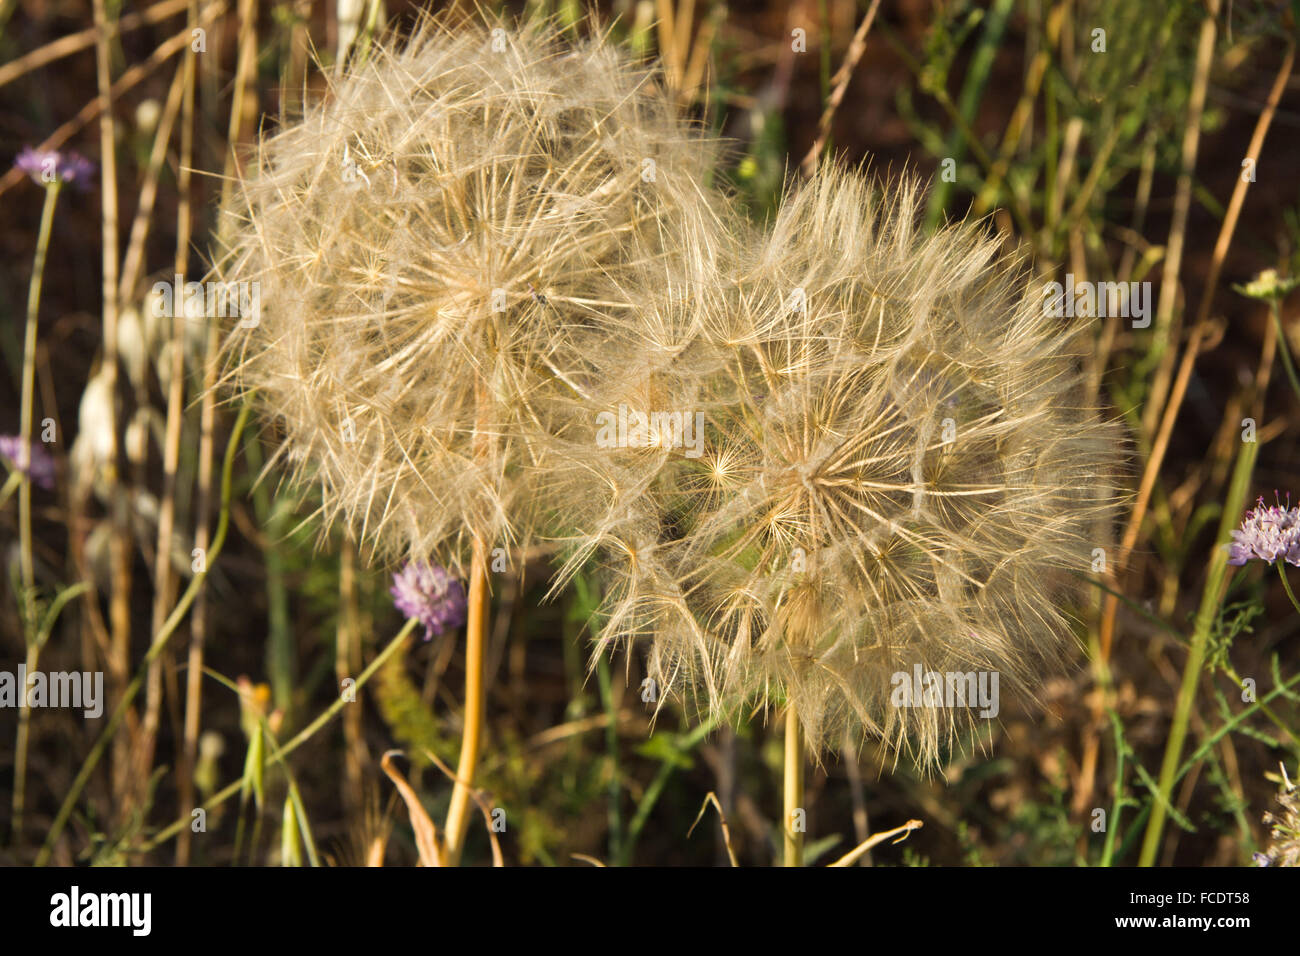 Macro photography of wild plant common dandelion, Spain Stock Photo